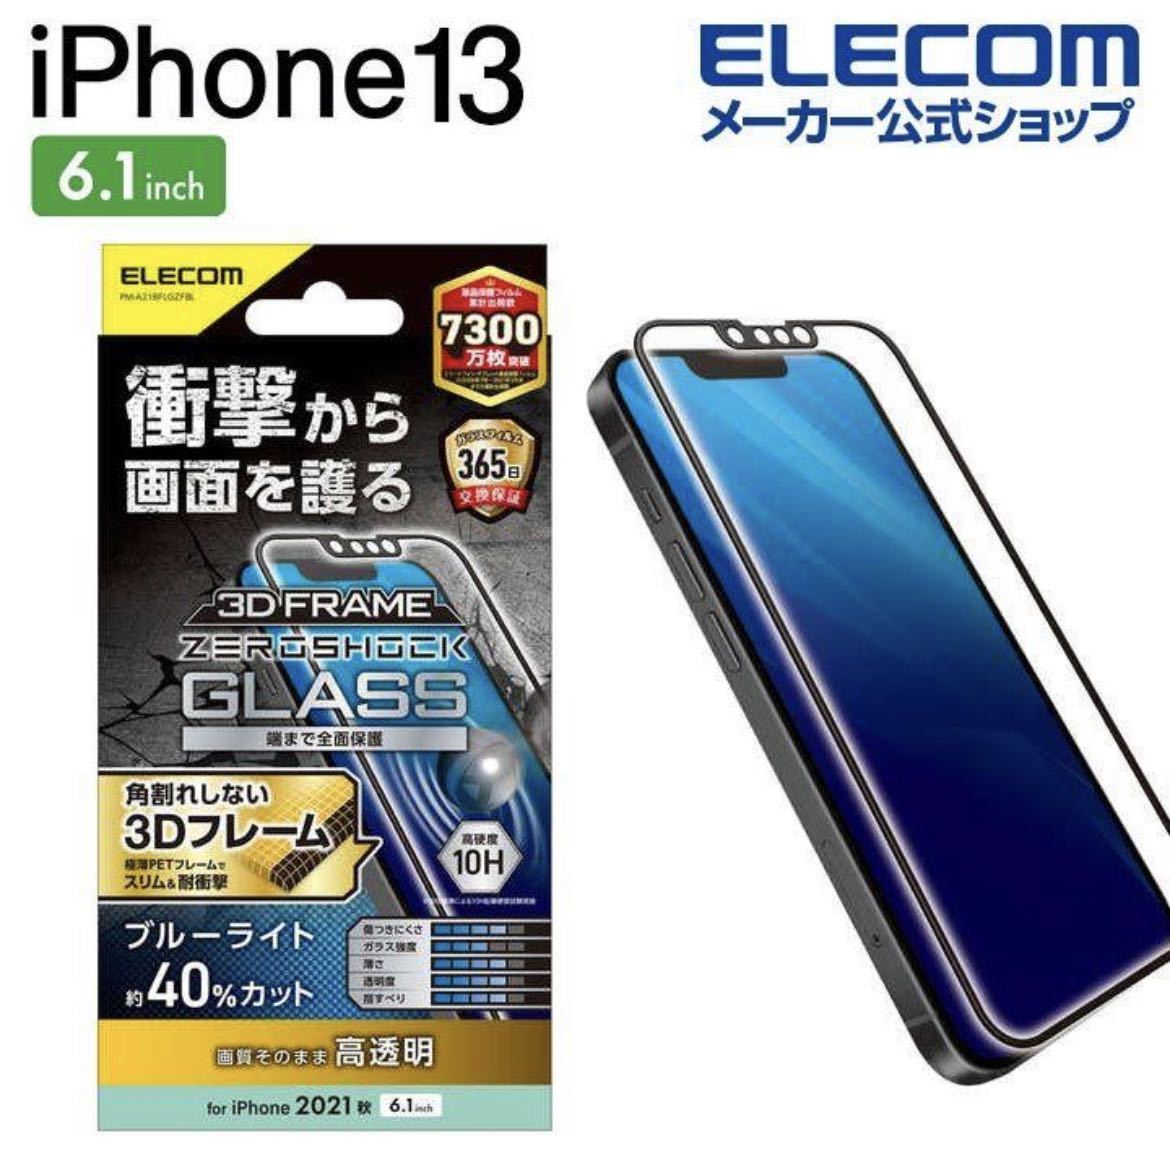 【送料込み、匿名発送】 2枚セット ELECOM iPhone 13 14 / iPhone 13 Pro 6.1inch ガラスフィルム ZEROSHOCK フレーム付きの画像3